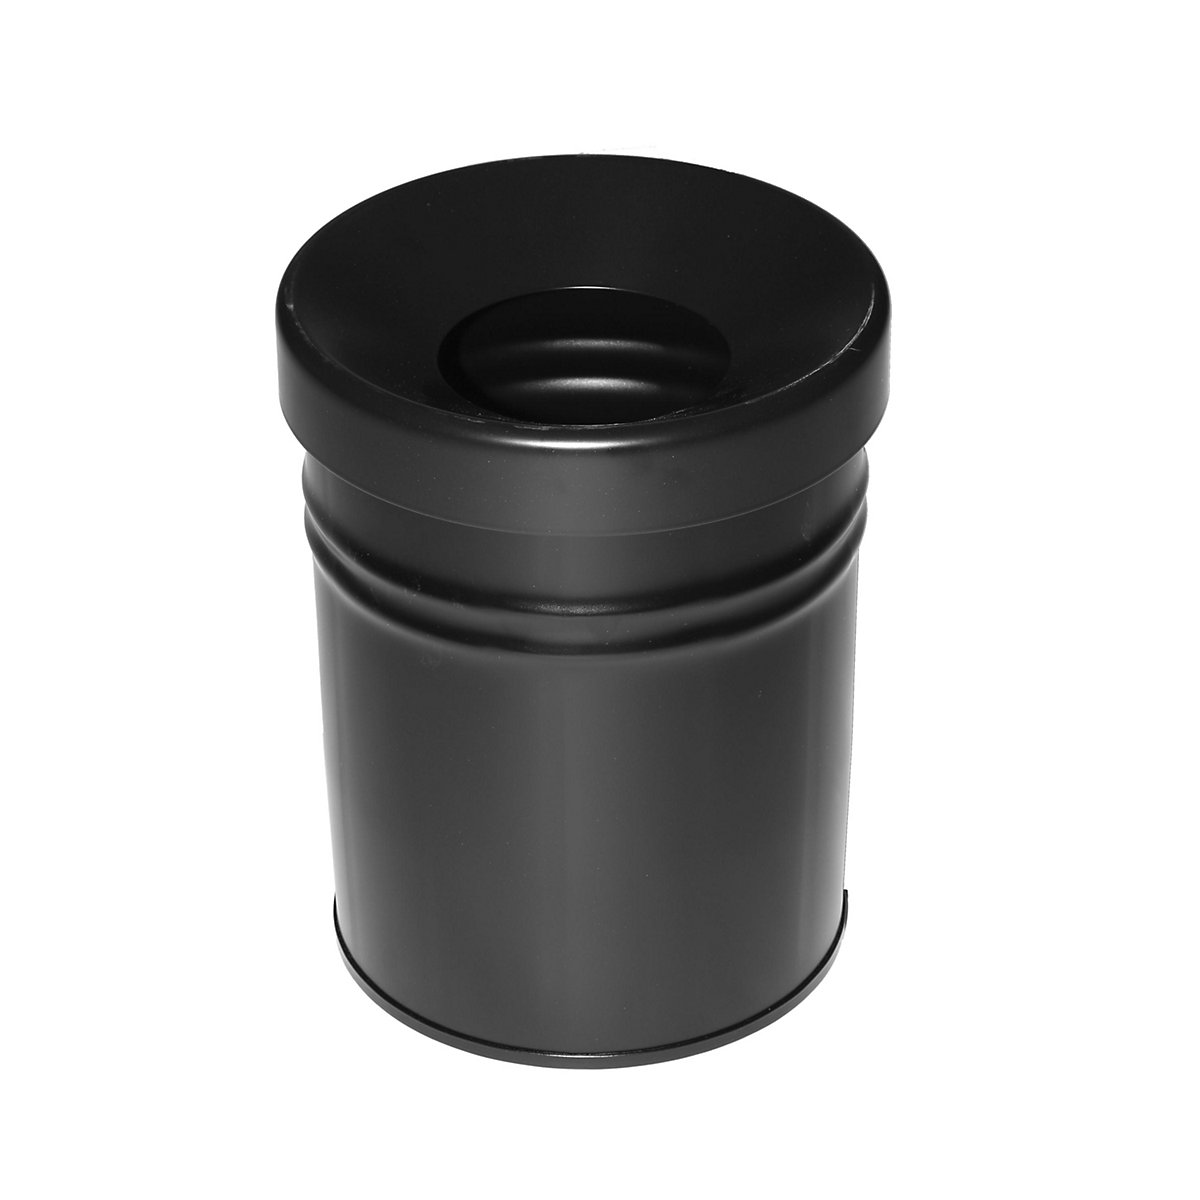 Abfallbehälter, selbstlöschend, Volumen 16 l, HxØ 340 x 245 mm, schwarz